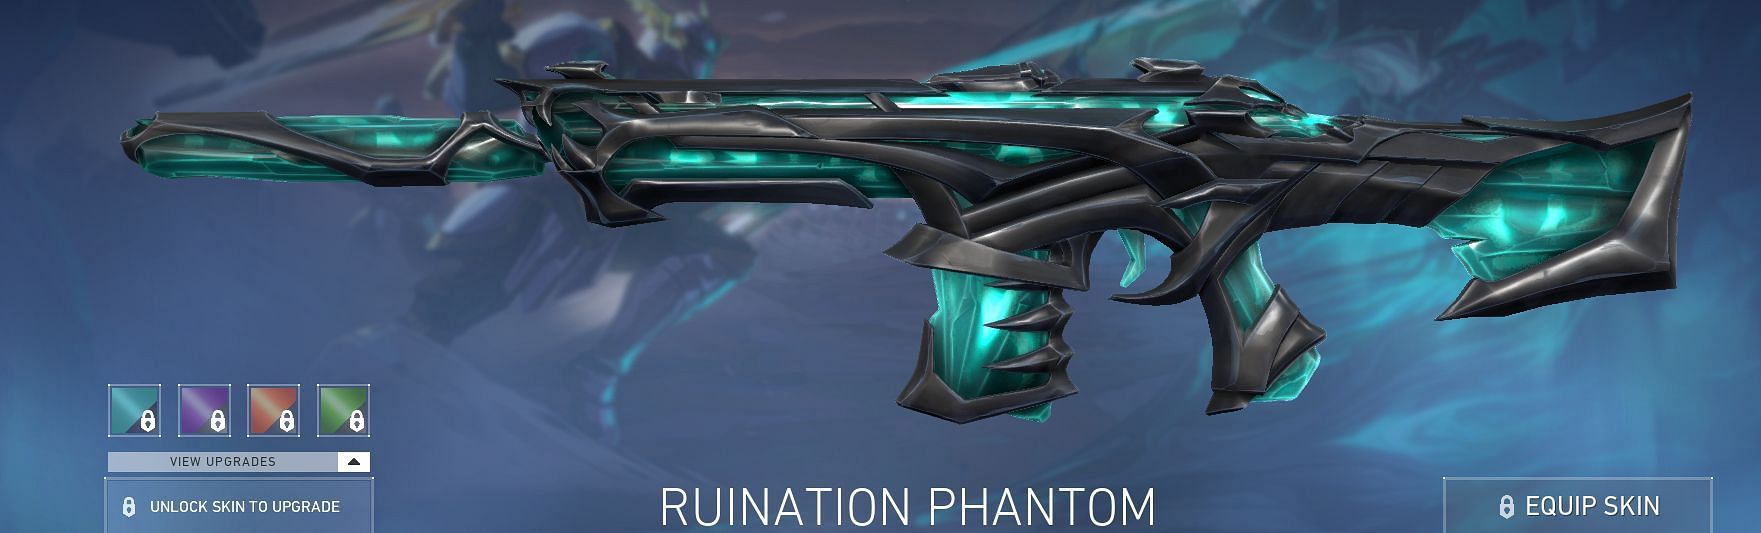 Ruination Phantom (Image via Riot Games)